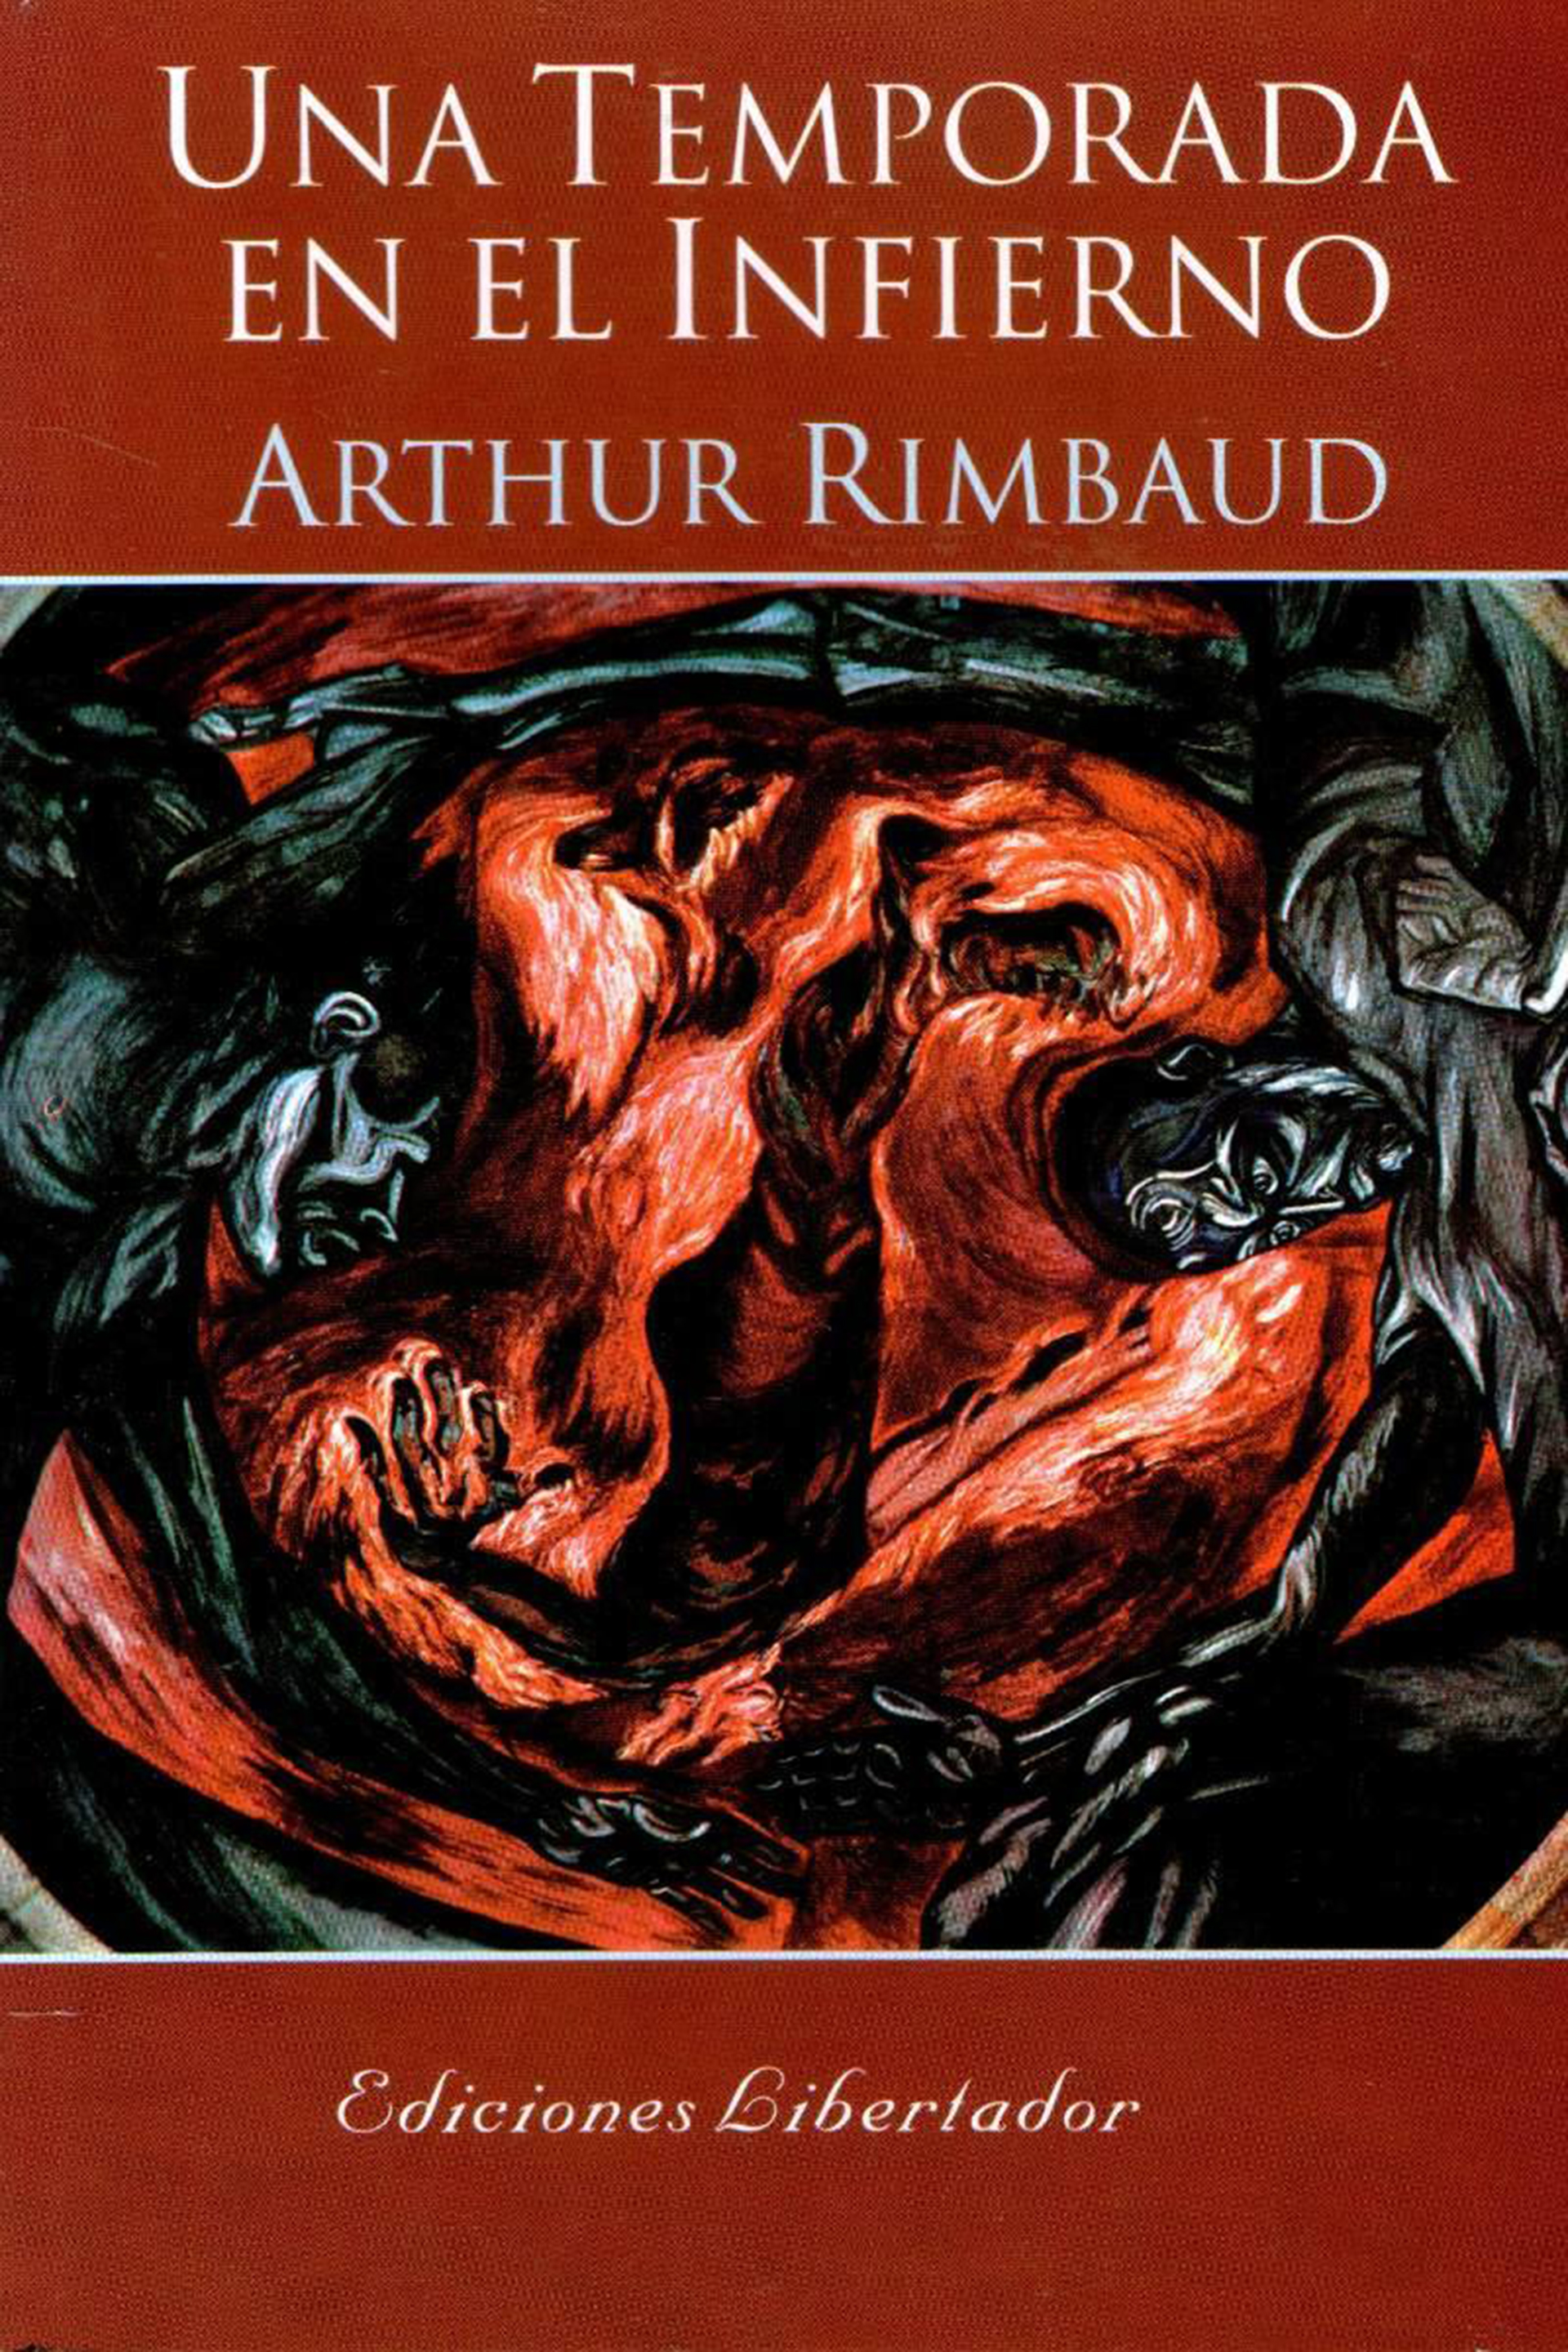 "Una temporada en el infierno", de Arthur Rimbaud, fue publicado en 1873